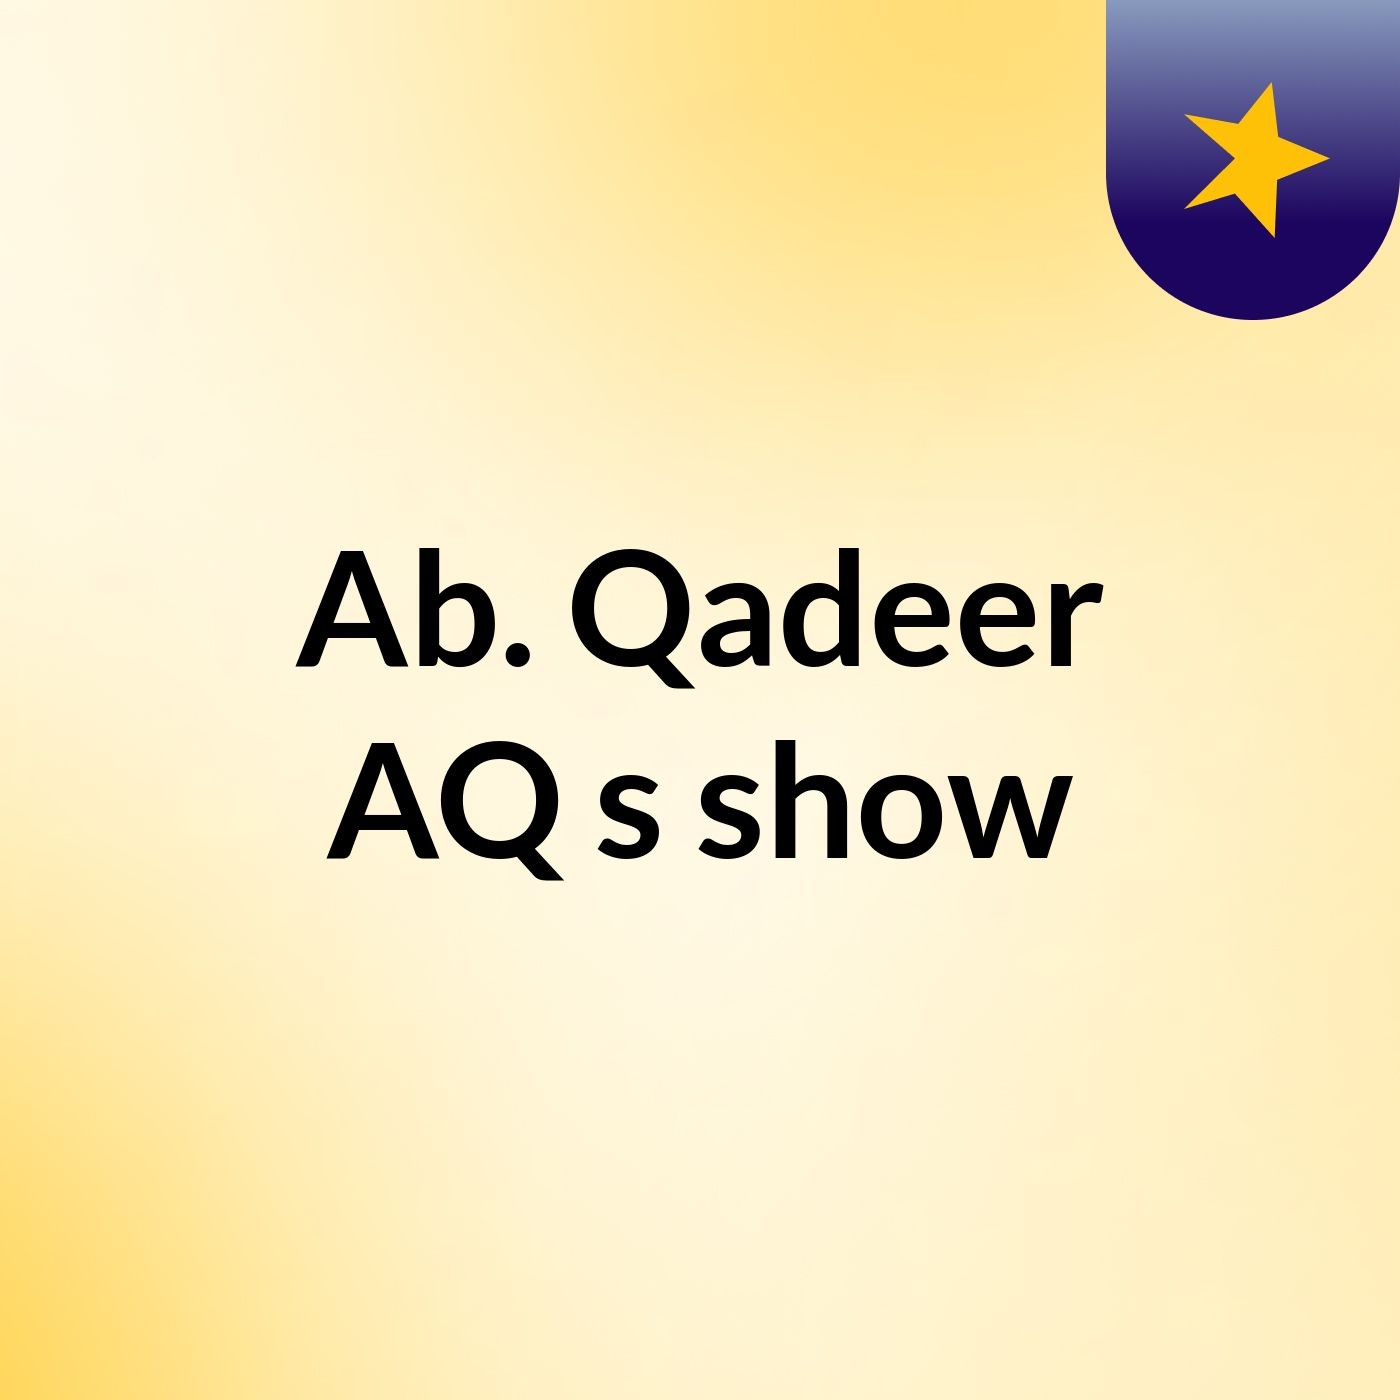 Ab. Qadeer AQ's show